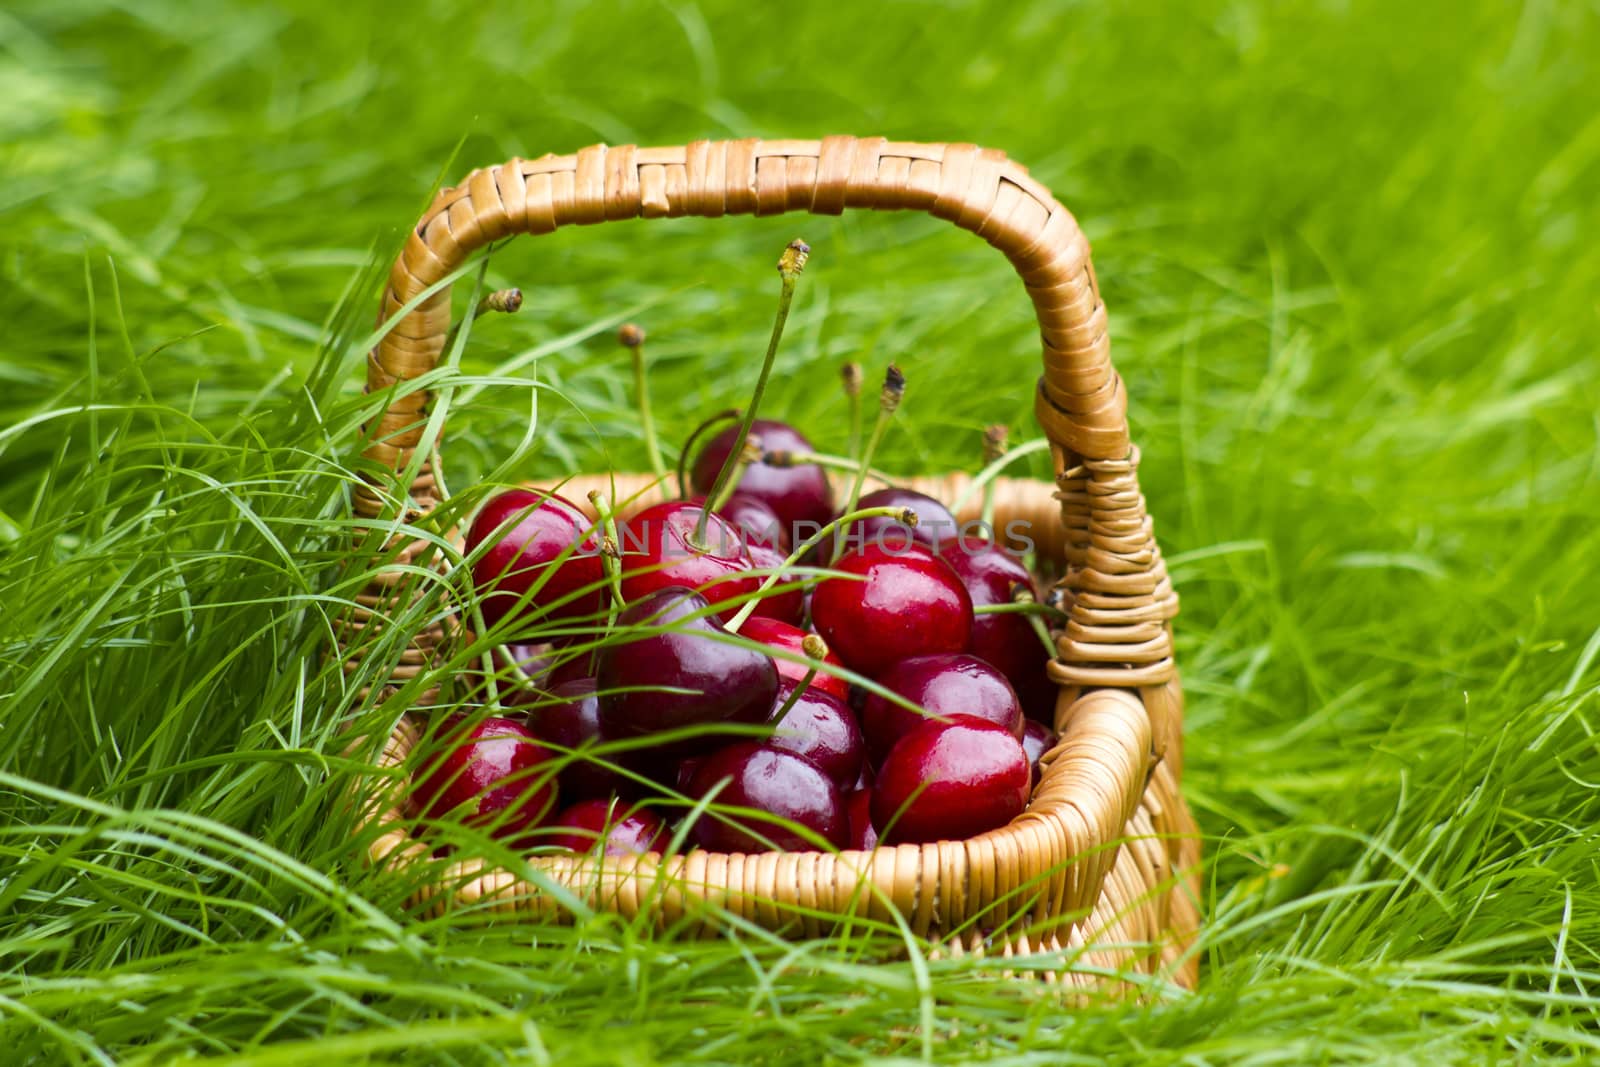 cherries in a basket in summer grass by miradrozdowski